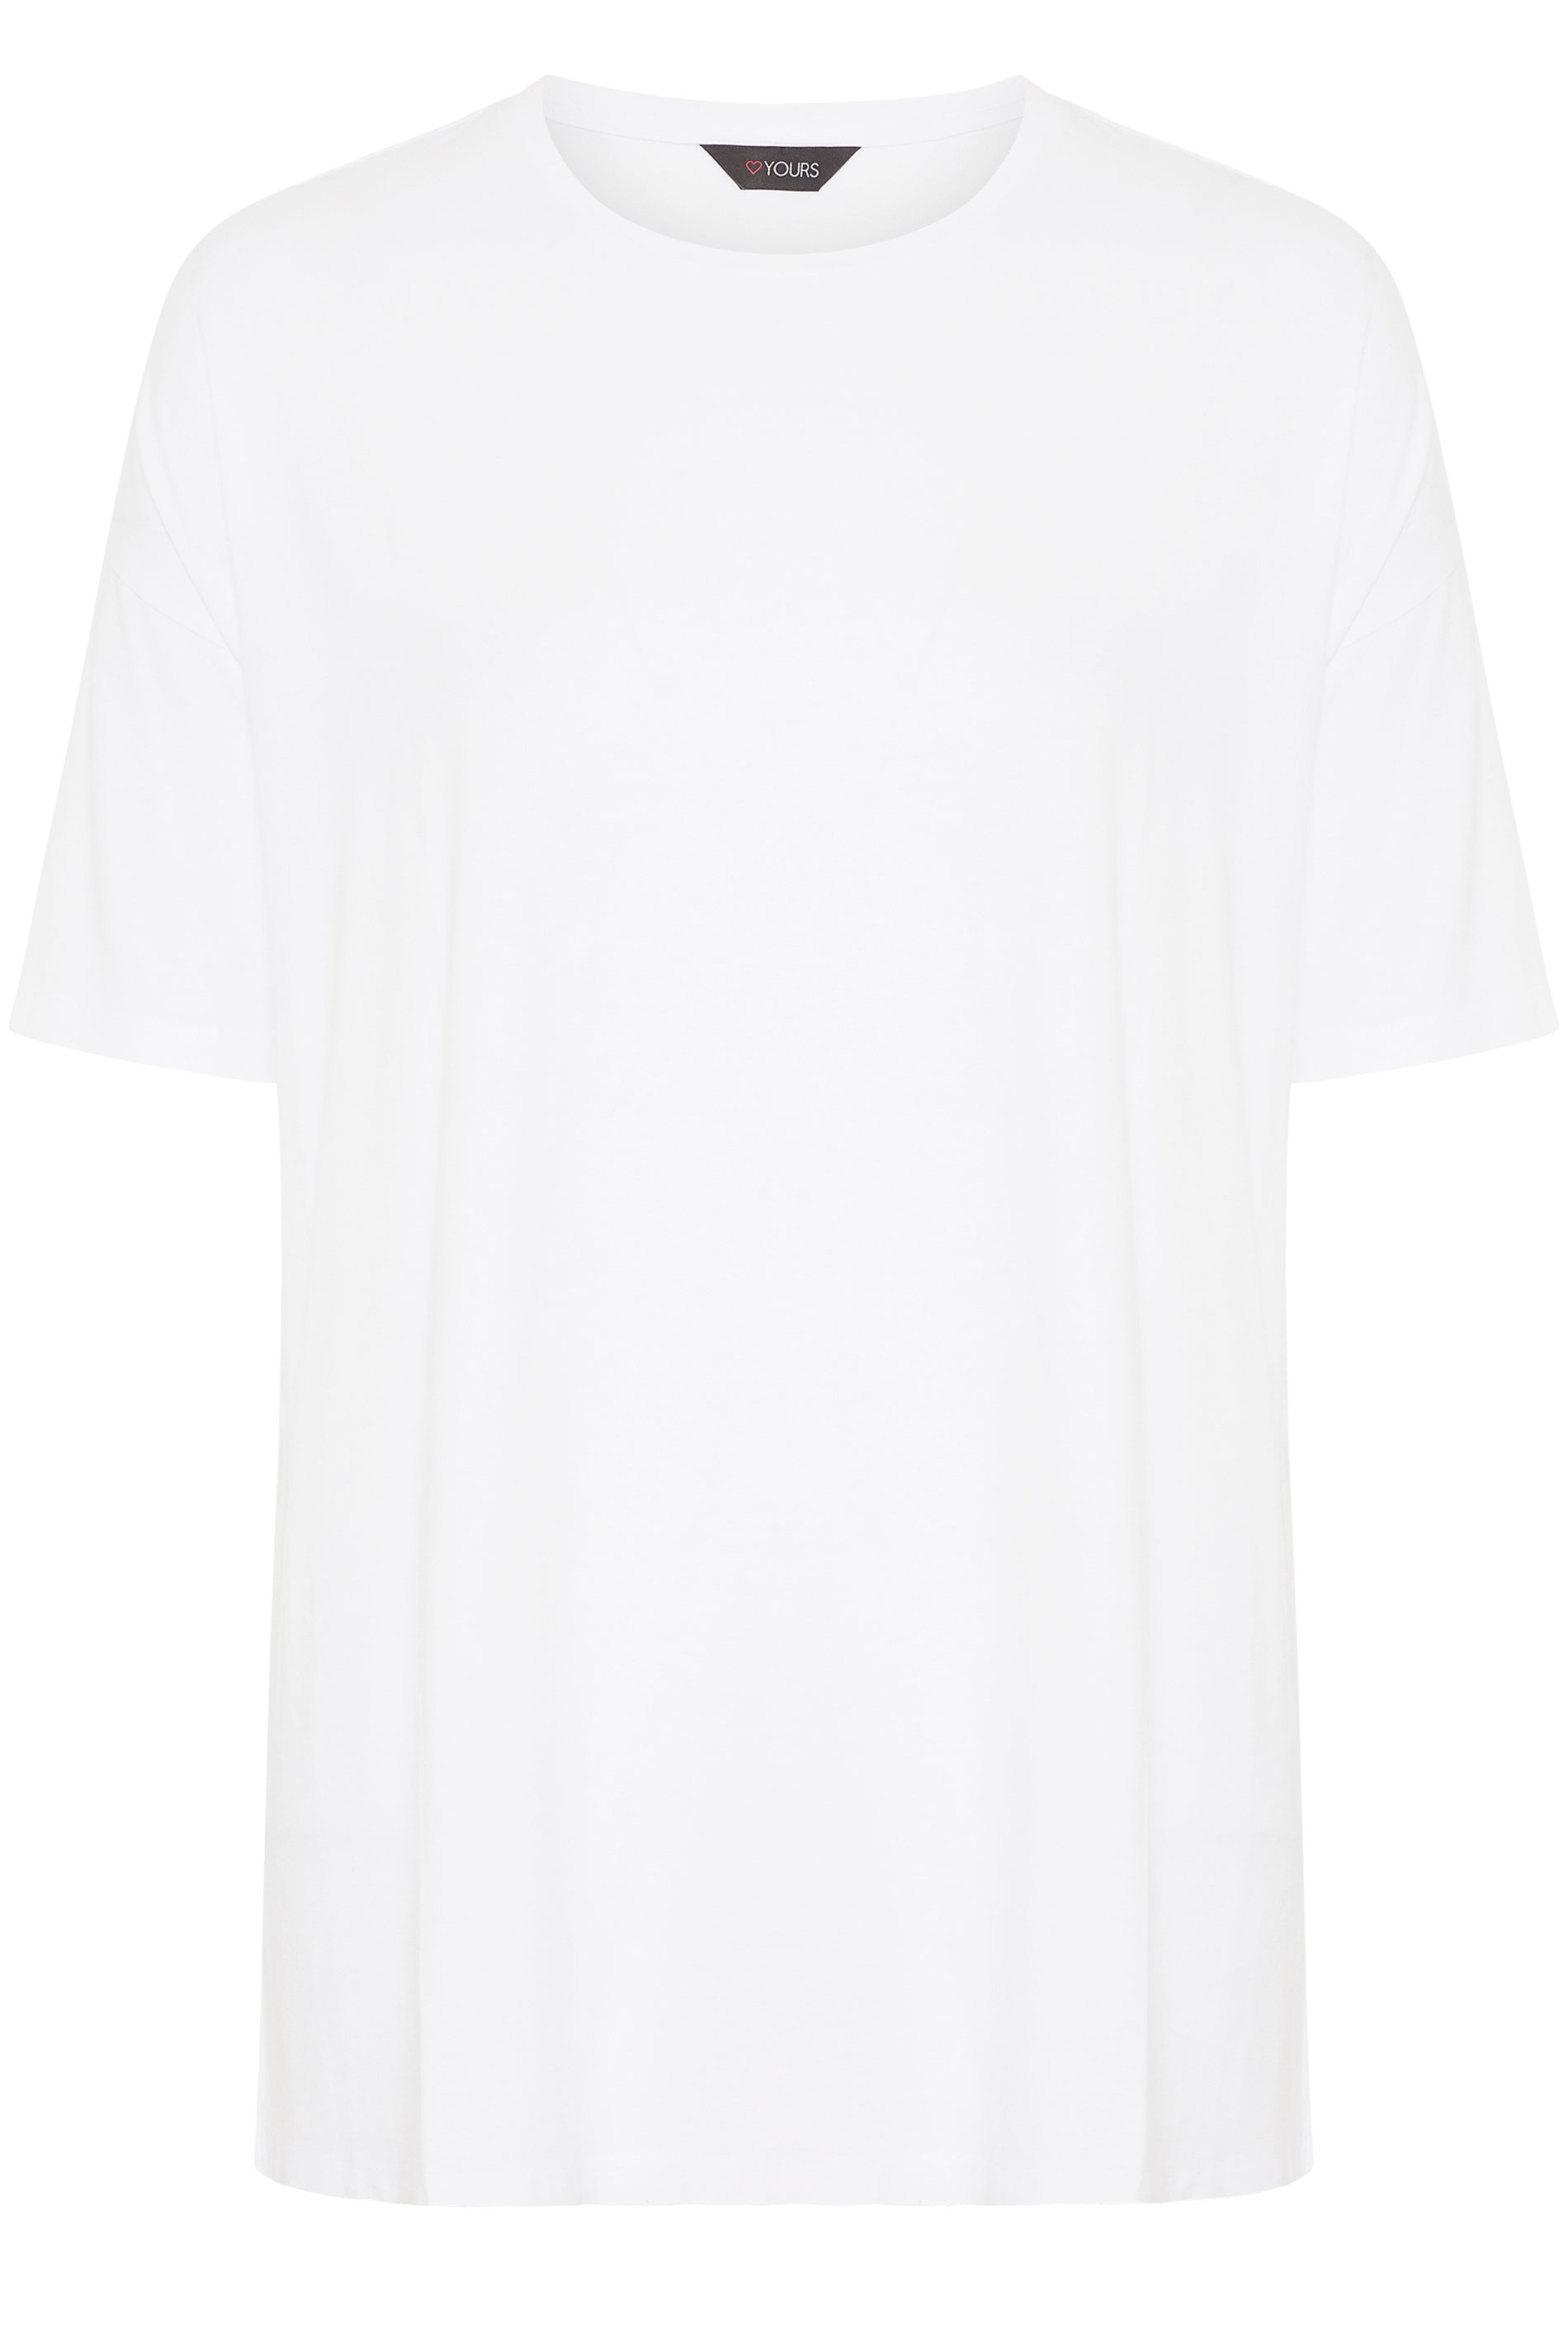 White Oversized T-Shirt | Yours Clothing